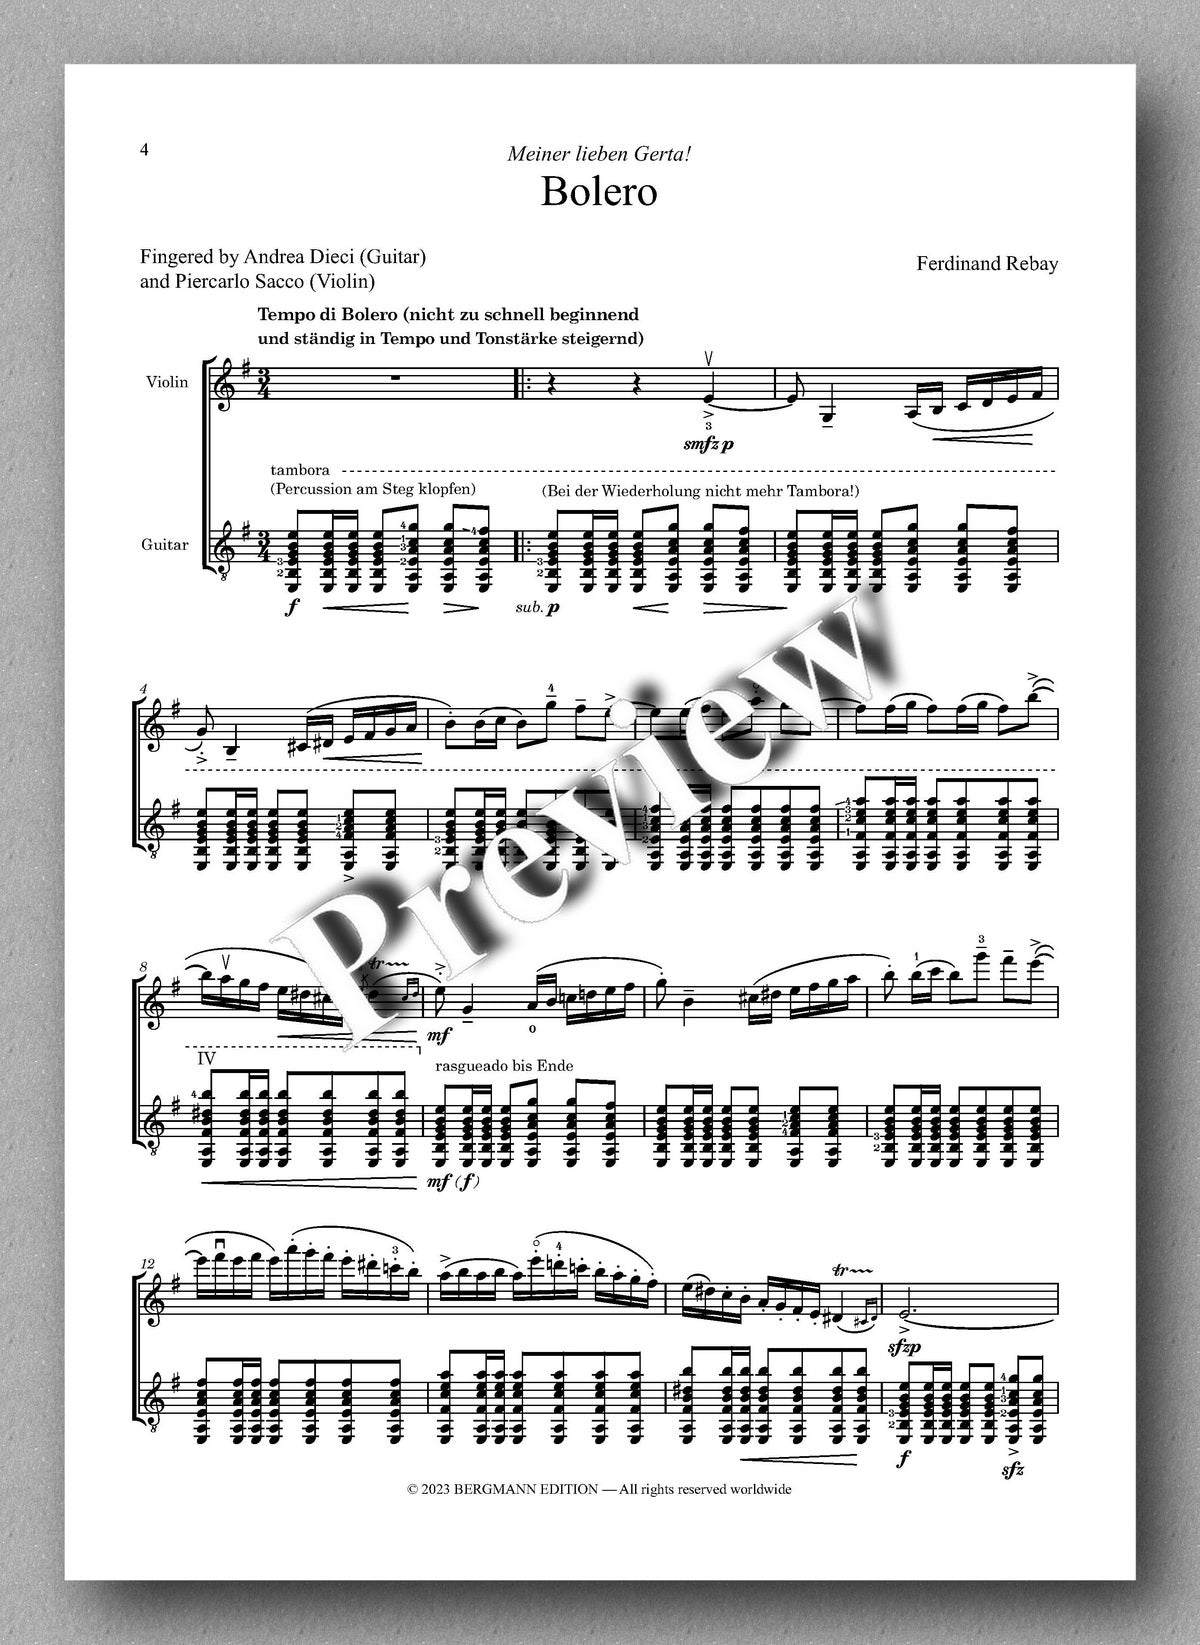 Ferdinand Rebay, Bolero - preview of the music score 1